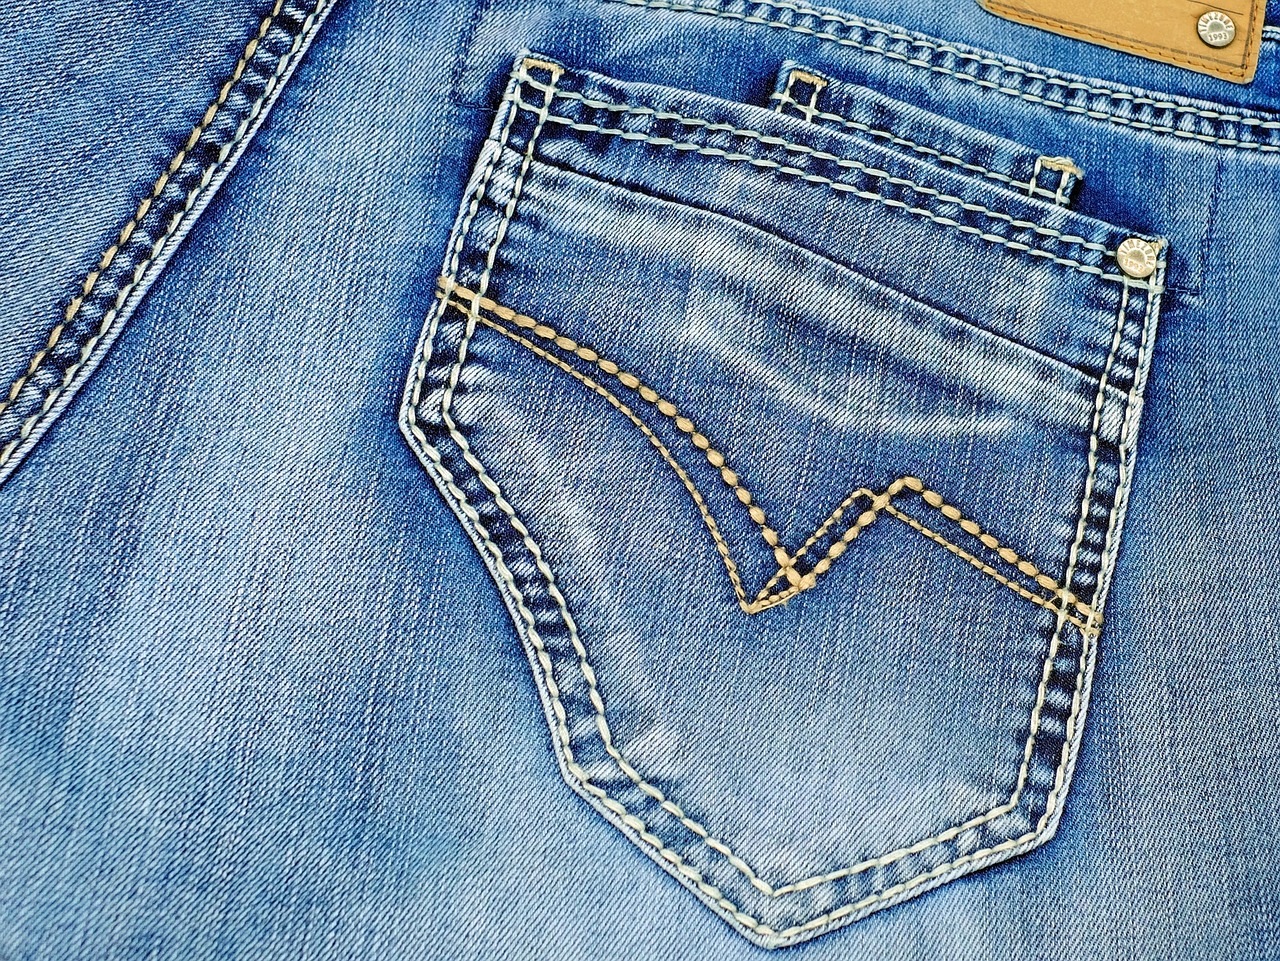 Factcheck: ‘Nergens zitten zoveel jeansbedrijven per vierkante kilometer als in Amsterdam’